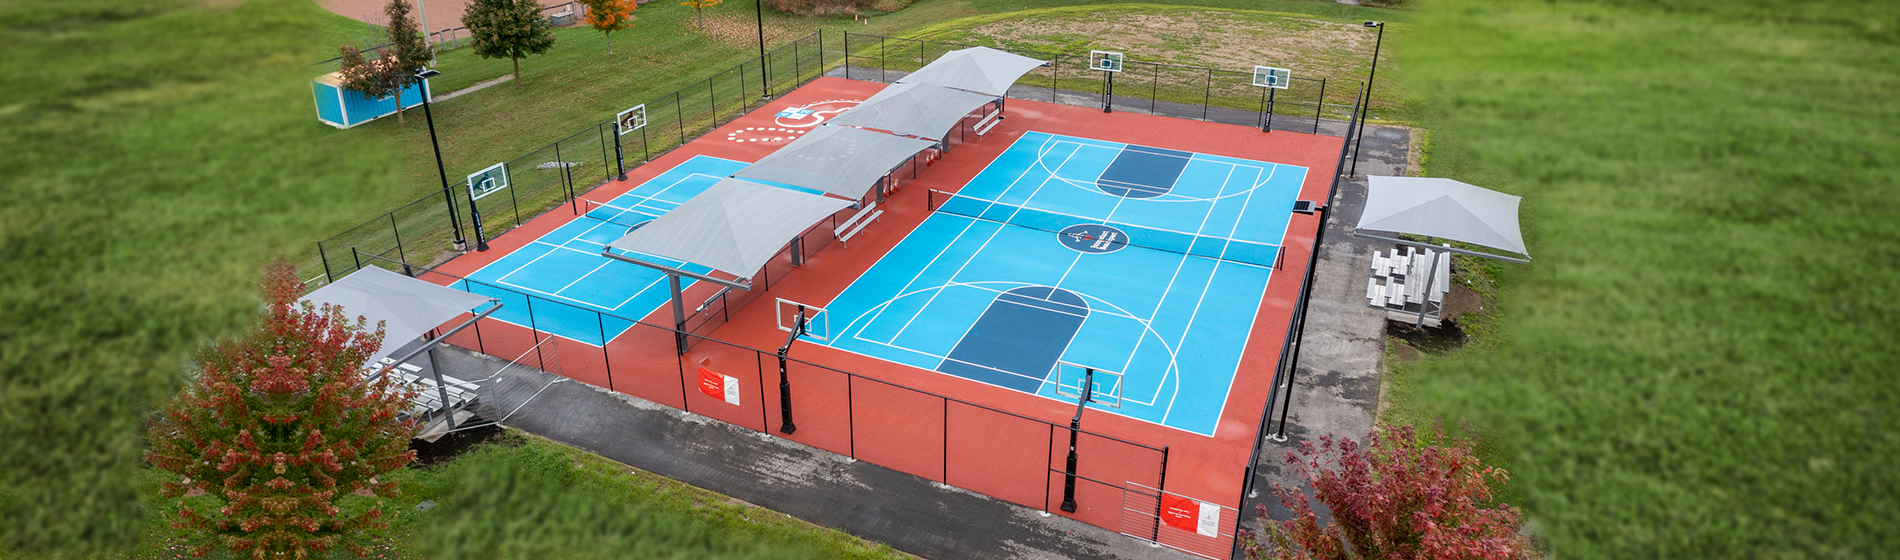 multisport court